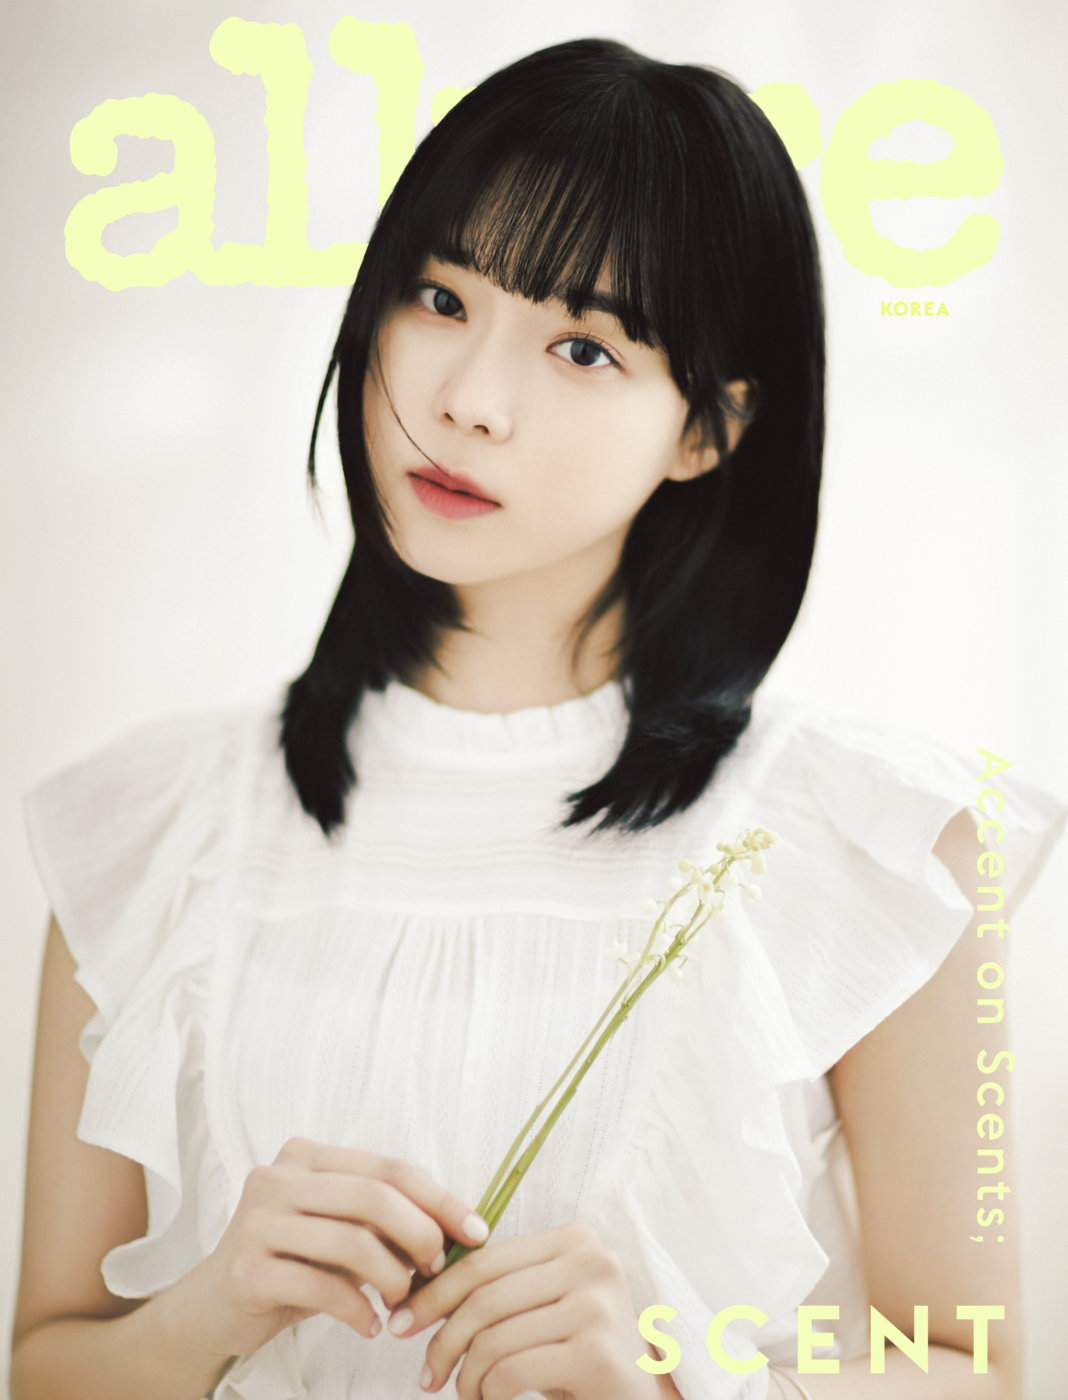 'Vườn hoa đa sắc của ông trùm SM': AESPA thể hiện visual đỉnh cao trên trang bìa tạp chí Allure Korea số tháng 5/2022 - Ảnh 3